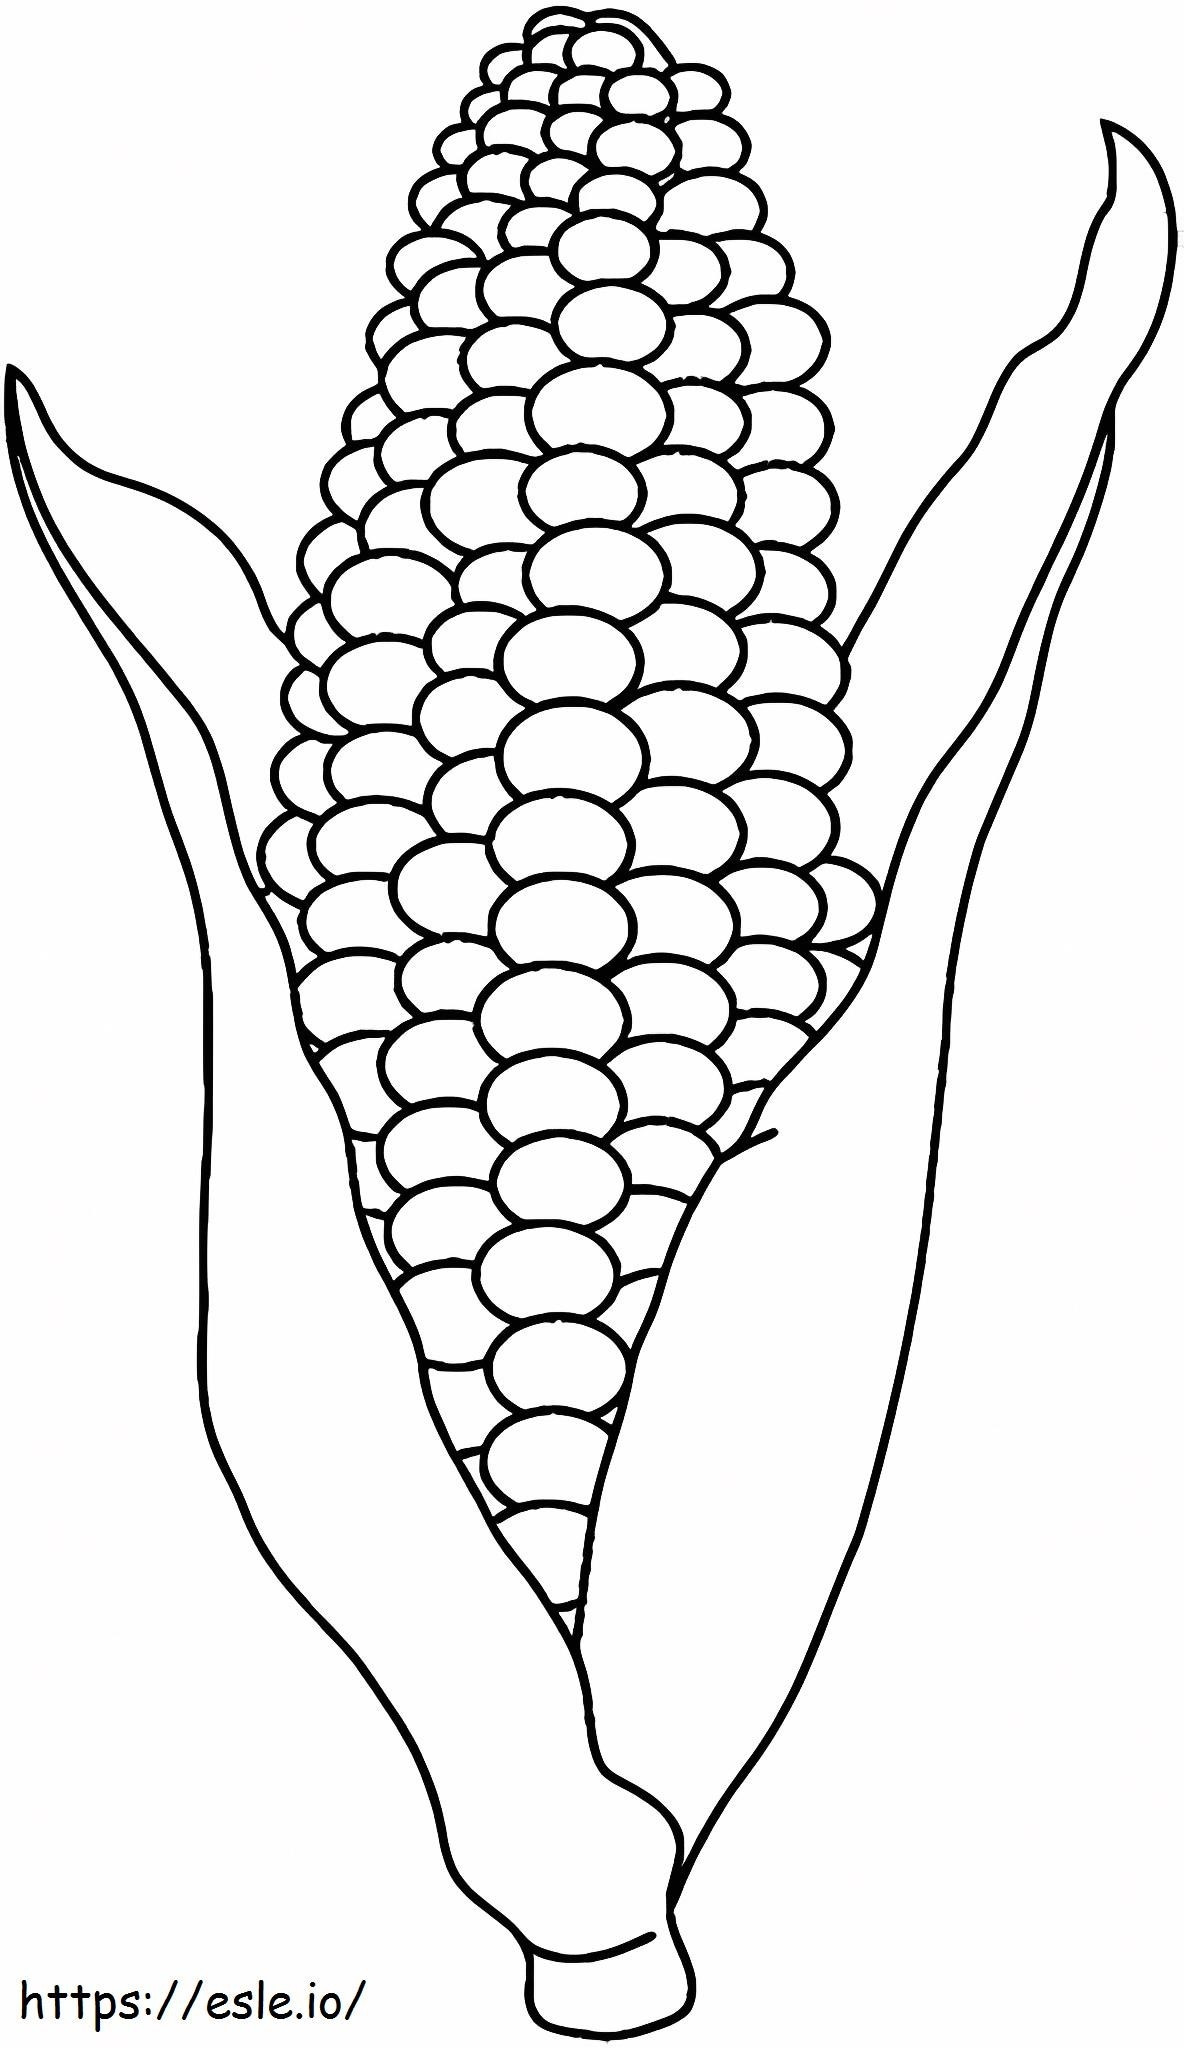 Ears Of Corn Színező Oldal kifestő